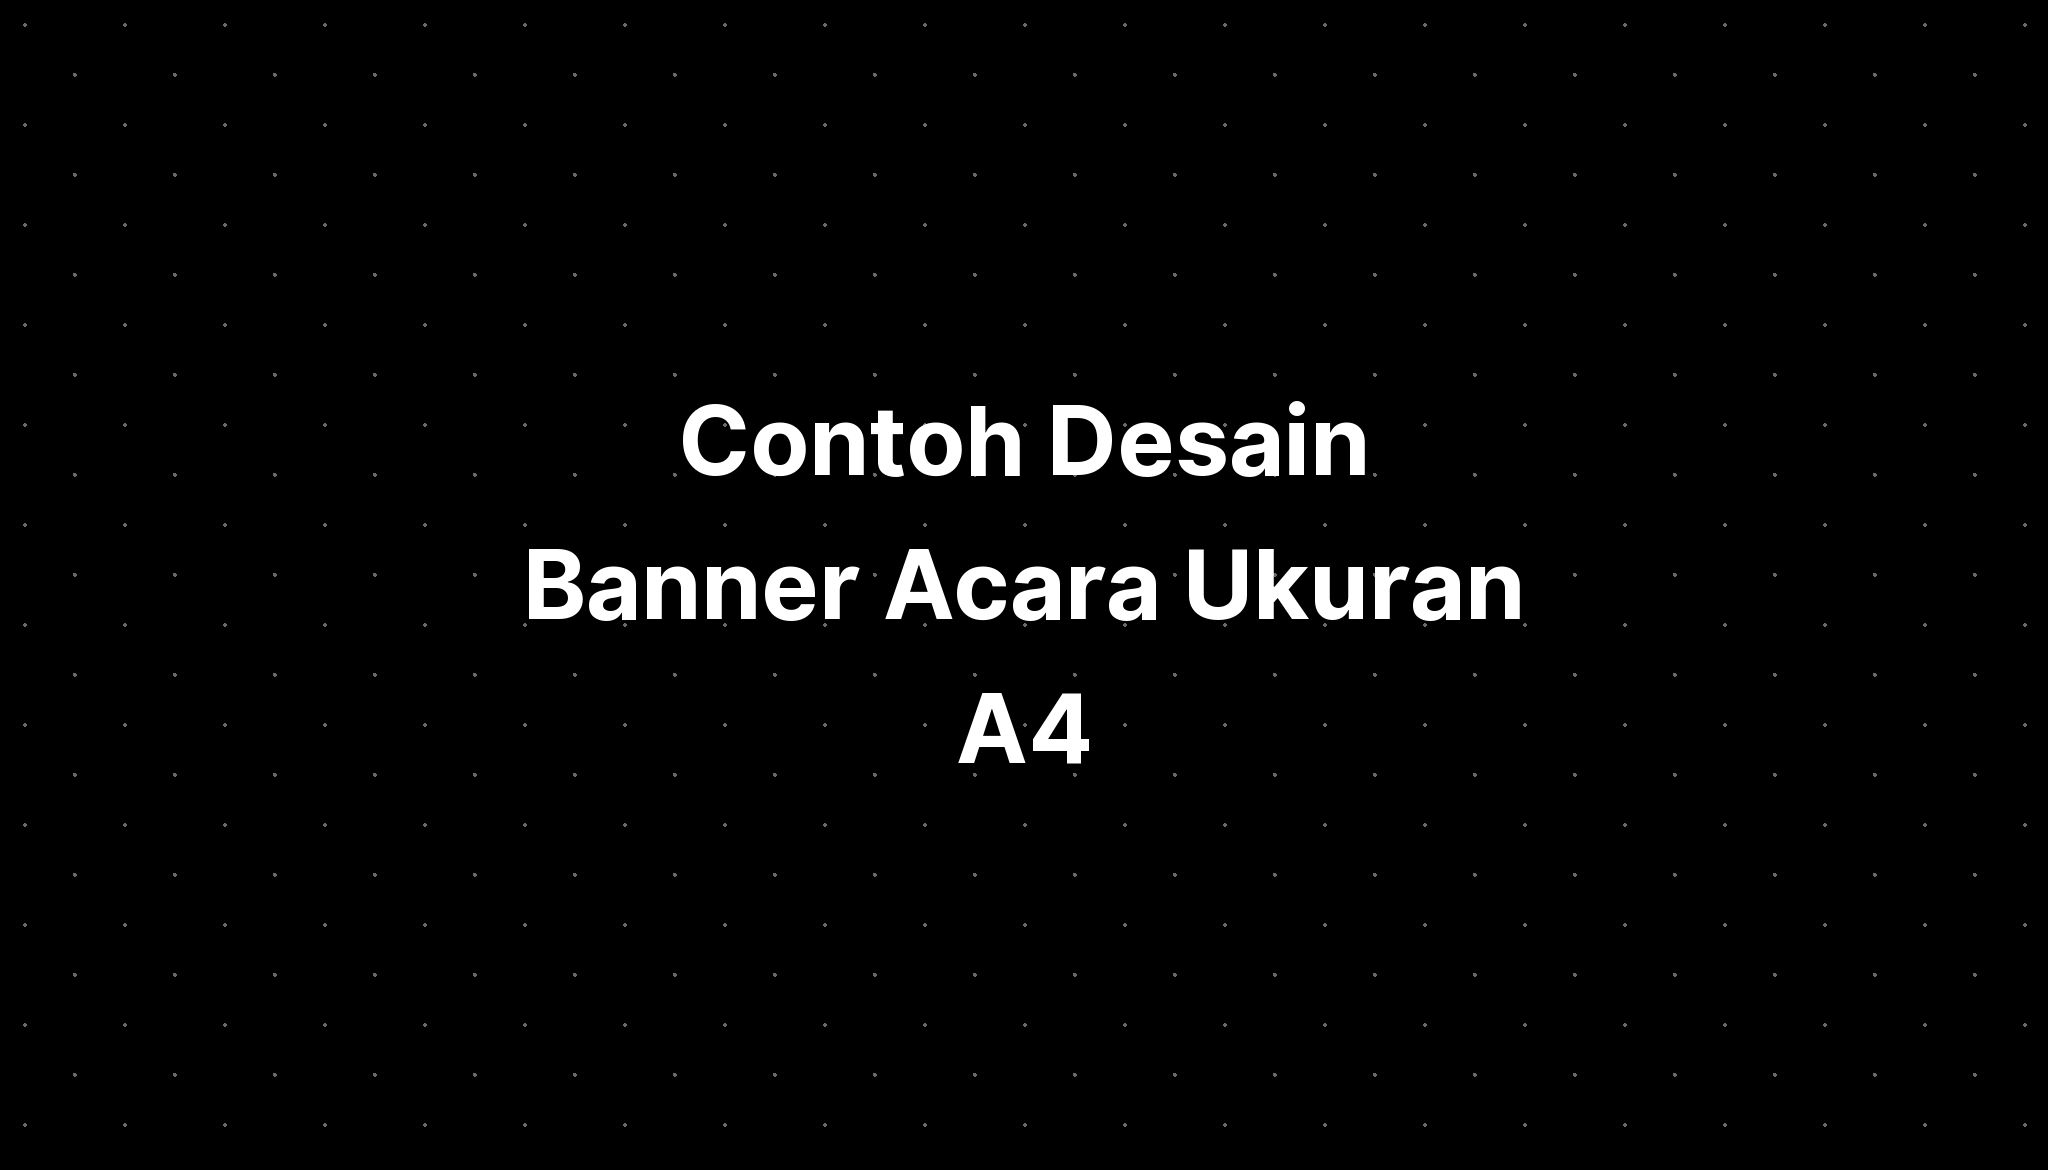 Contoh Desain Banner Acara Ukuran A4 - IMAGESEE